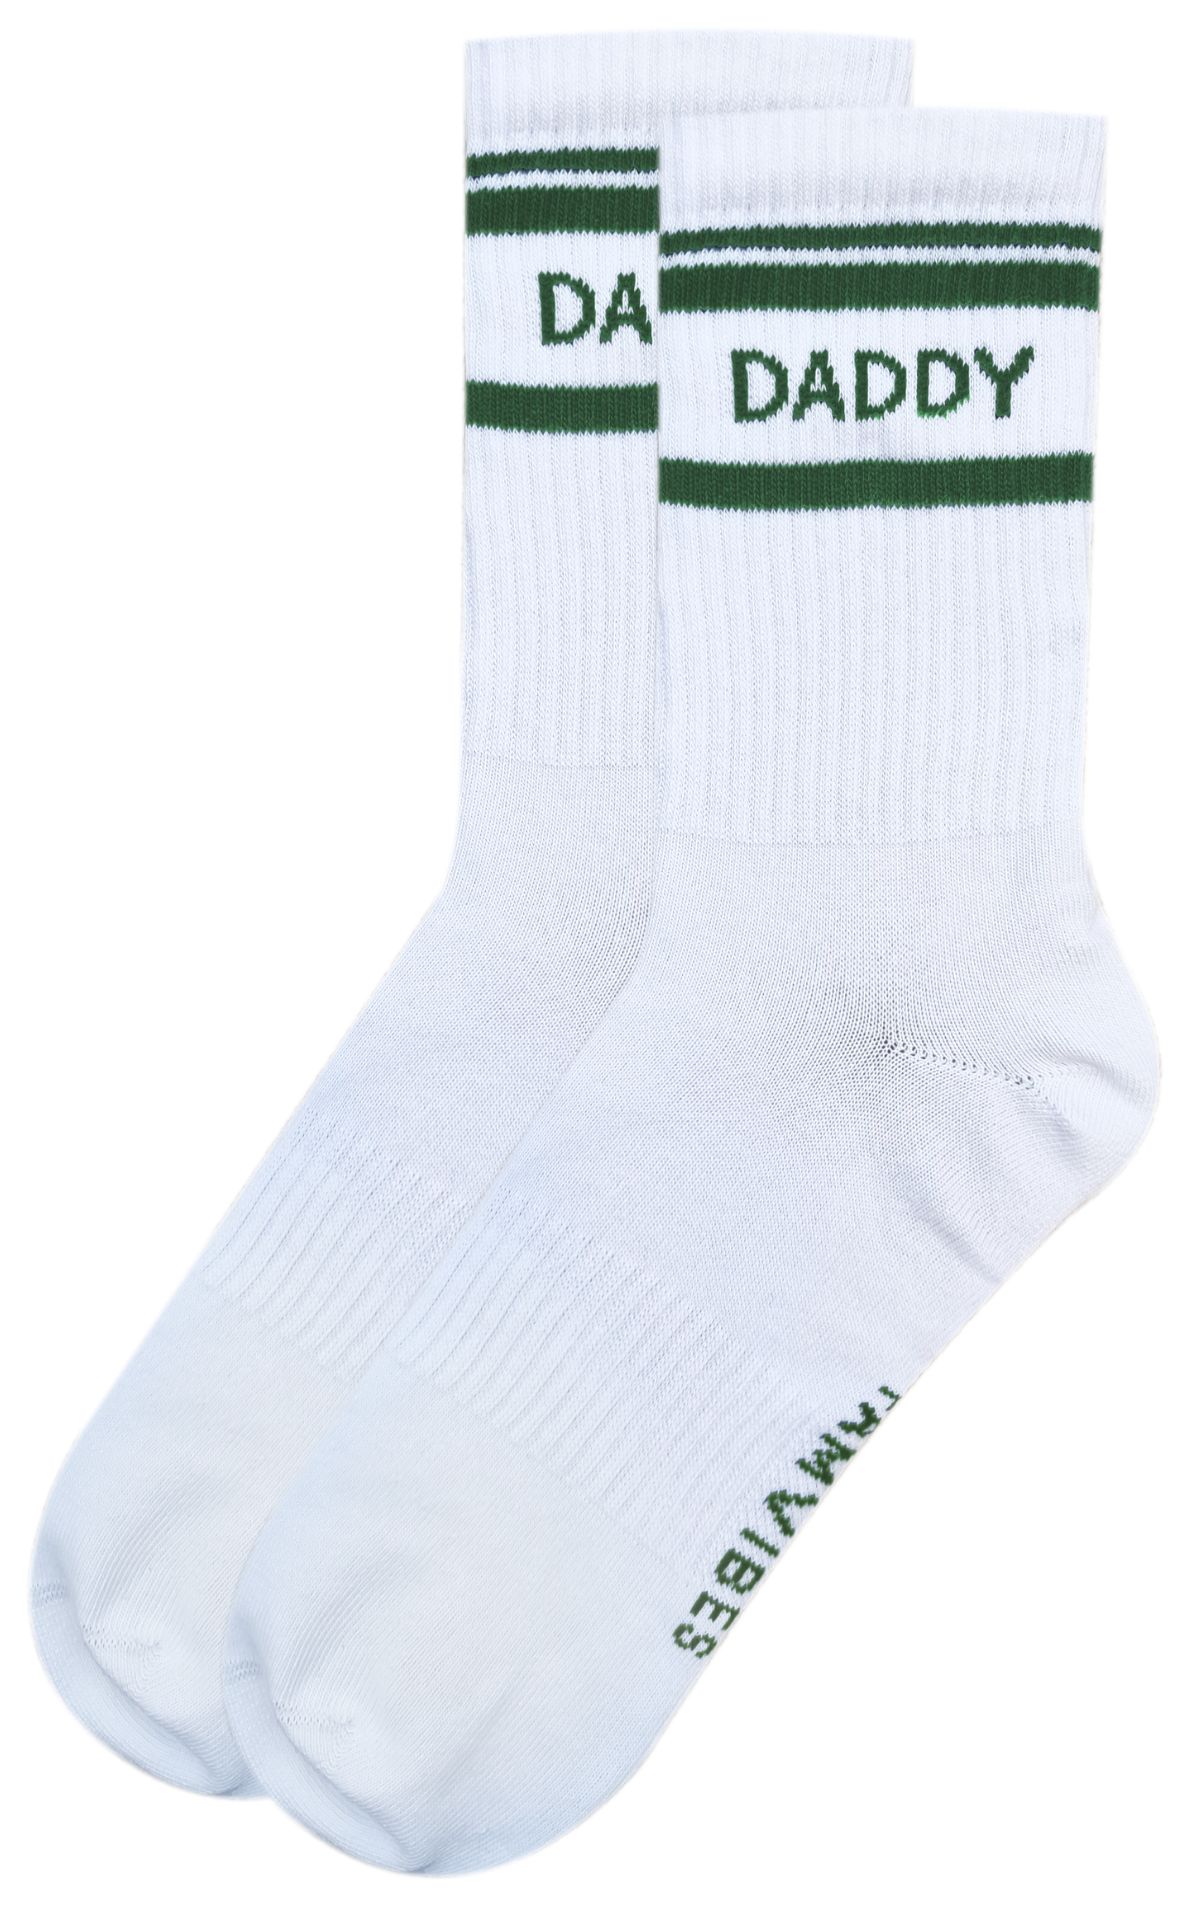 Famvibes Socken DADDY Striped weiß/grün